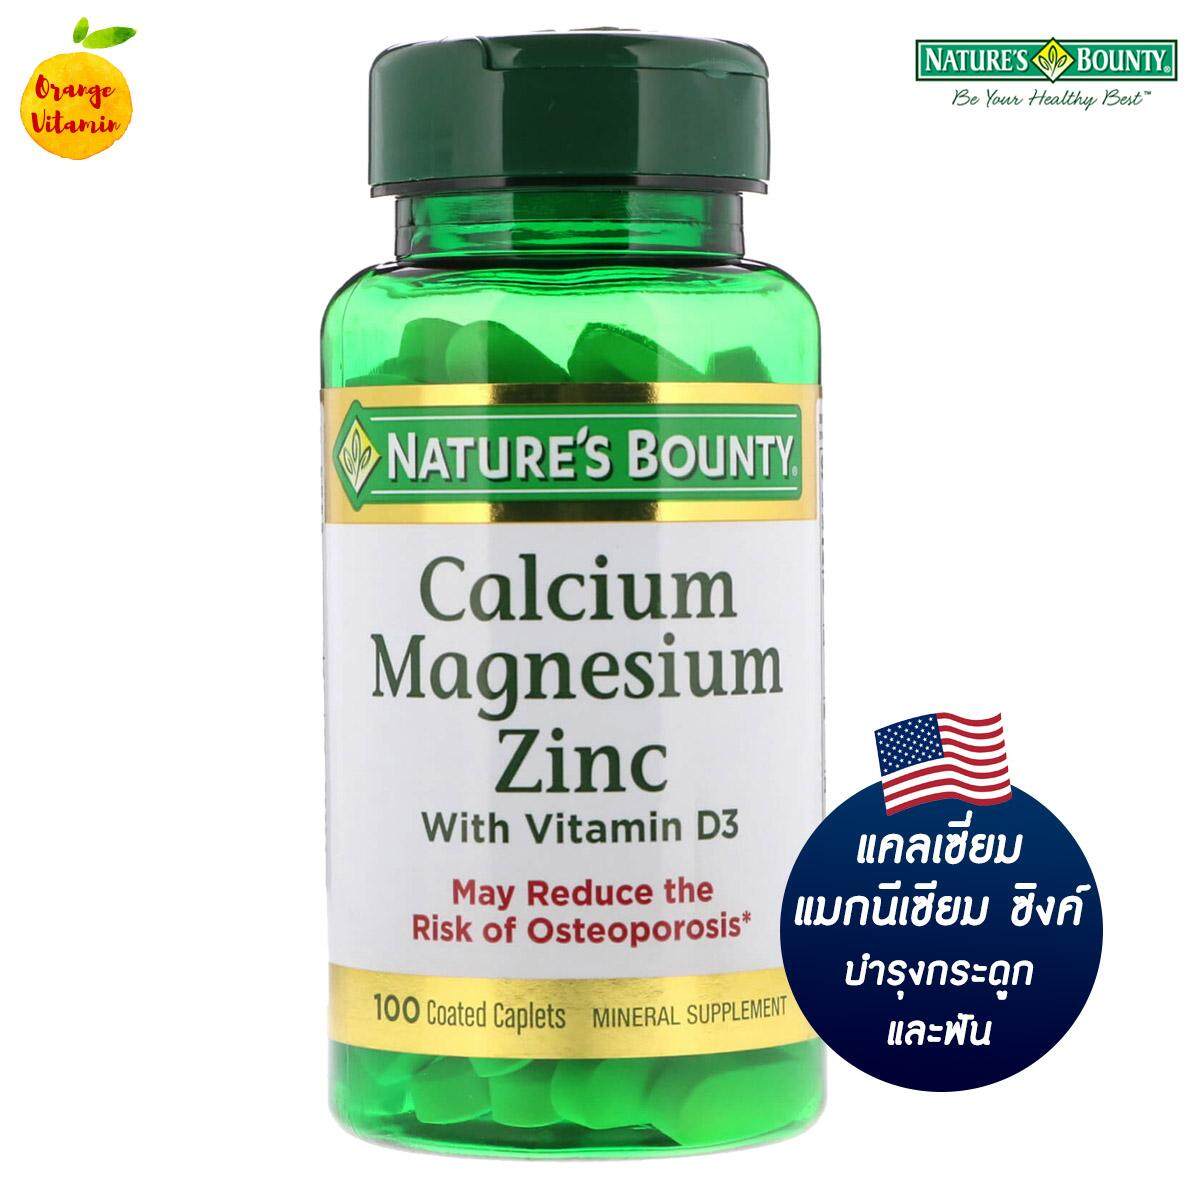 แนะนำ เนเจอร์ส บาวน์ตี้ แคลเซี่ยม แมกนีเซียม ซิงค์ Nature's Bounty, Calcium Magnesium Zinc with Vitamin D3, 100 Coated Caplets บำรุงกระดูก เสริมสร้างมวลกระดูก เพิ่มการดูดซึมแคลเซียม